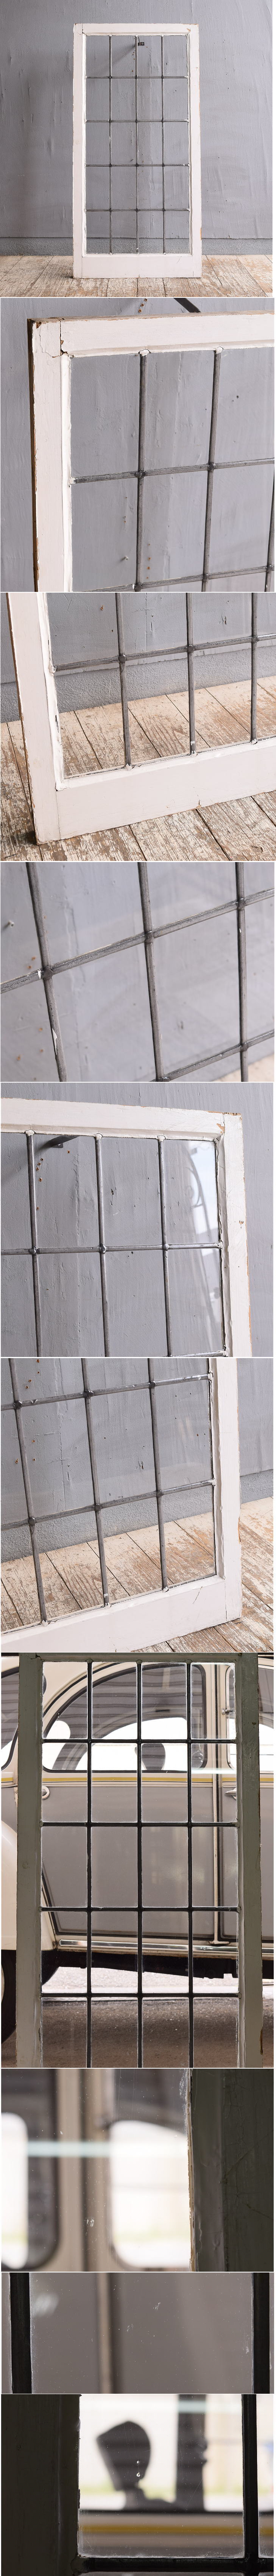 イギリス アンティーク 窓 無色透明 11695